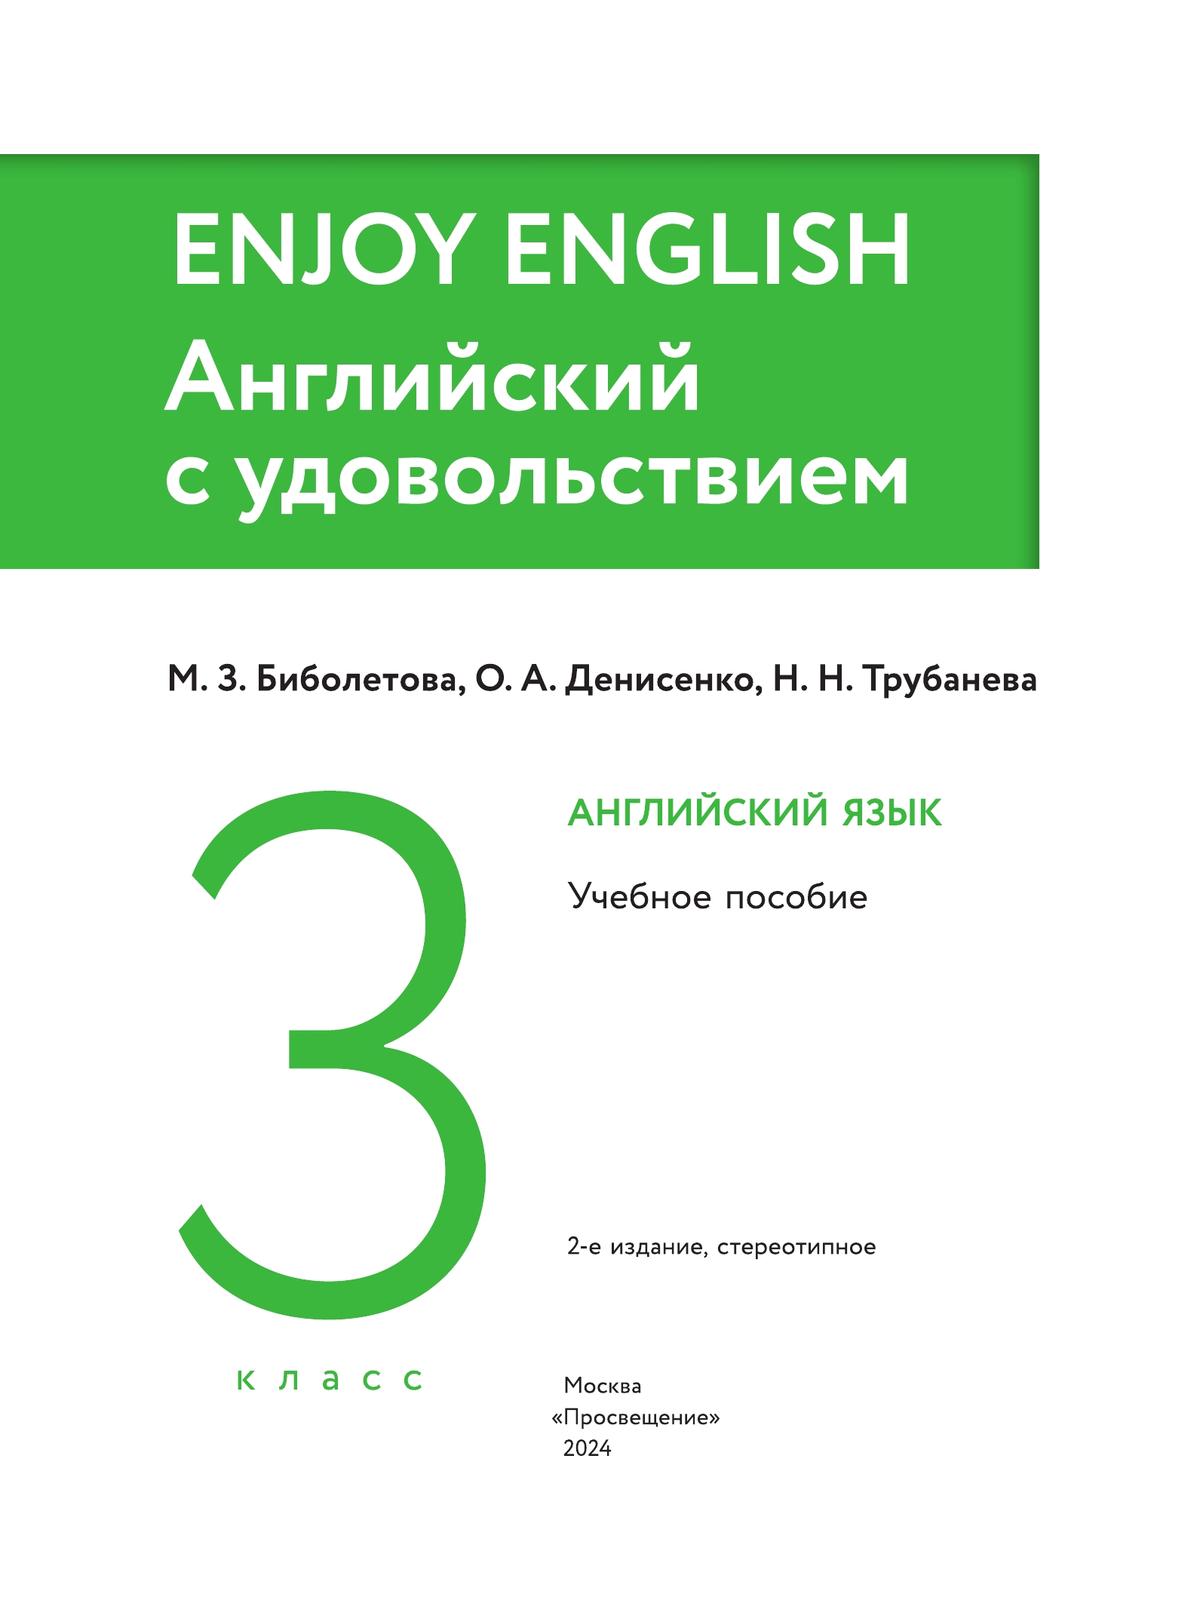 Английский язык. 3 класс. Учебное пособие 9